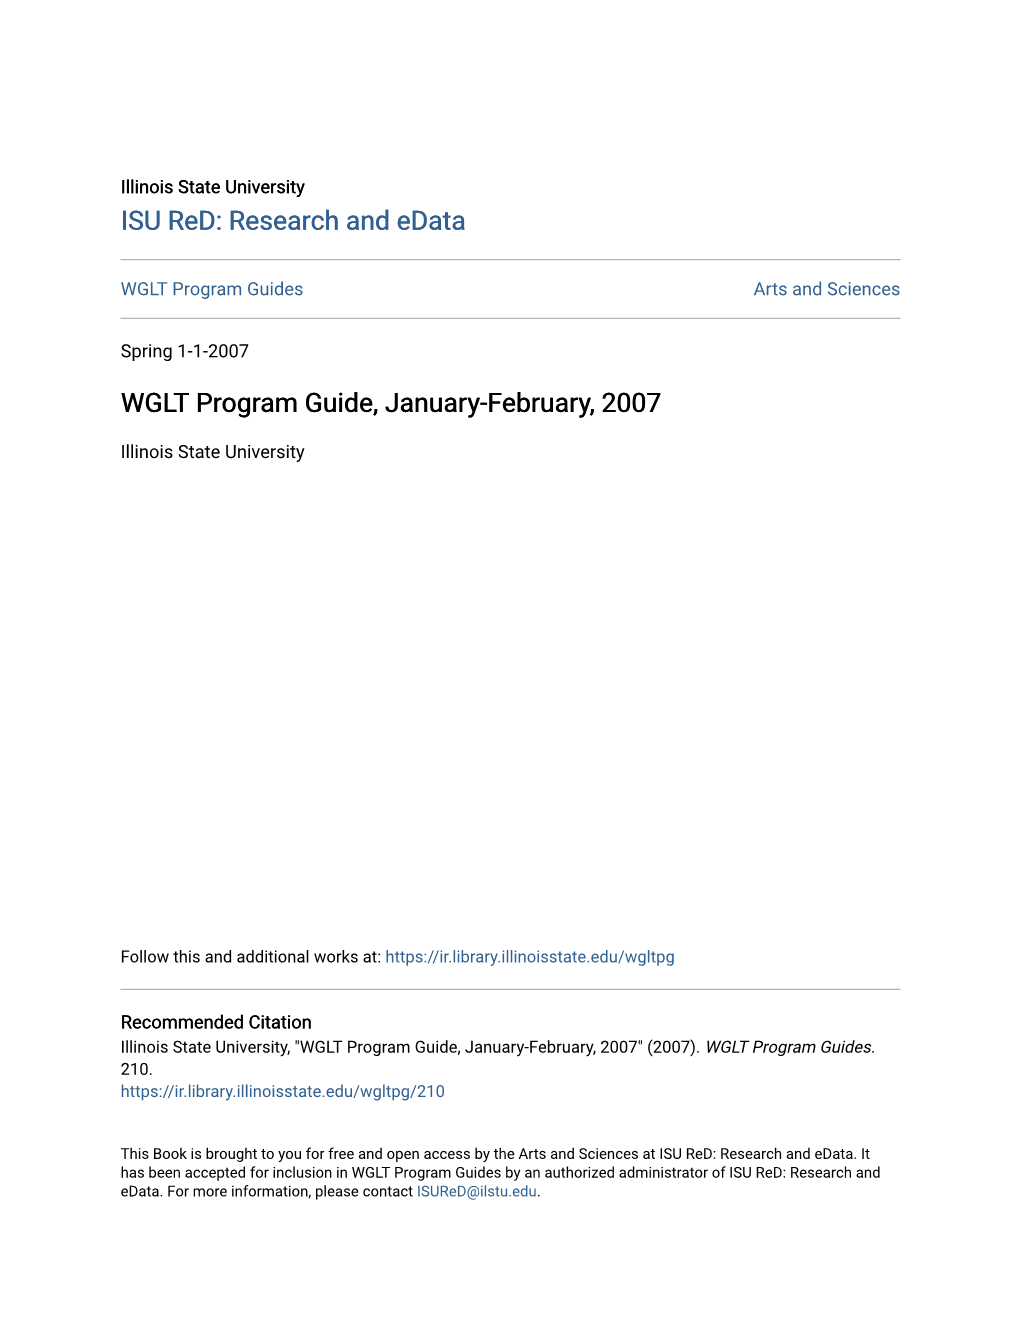 WGLT Program Guide, January-February, 2007